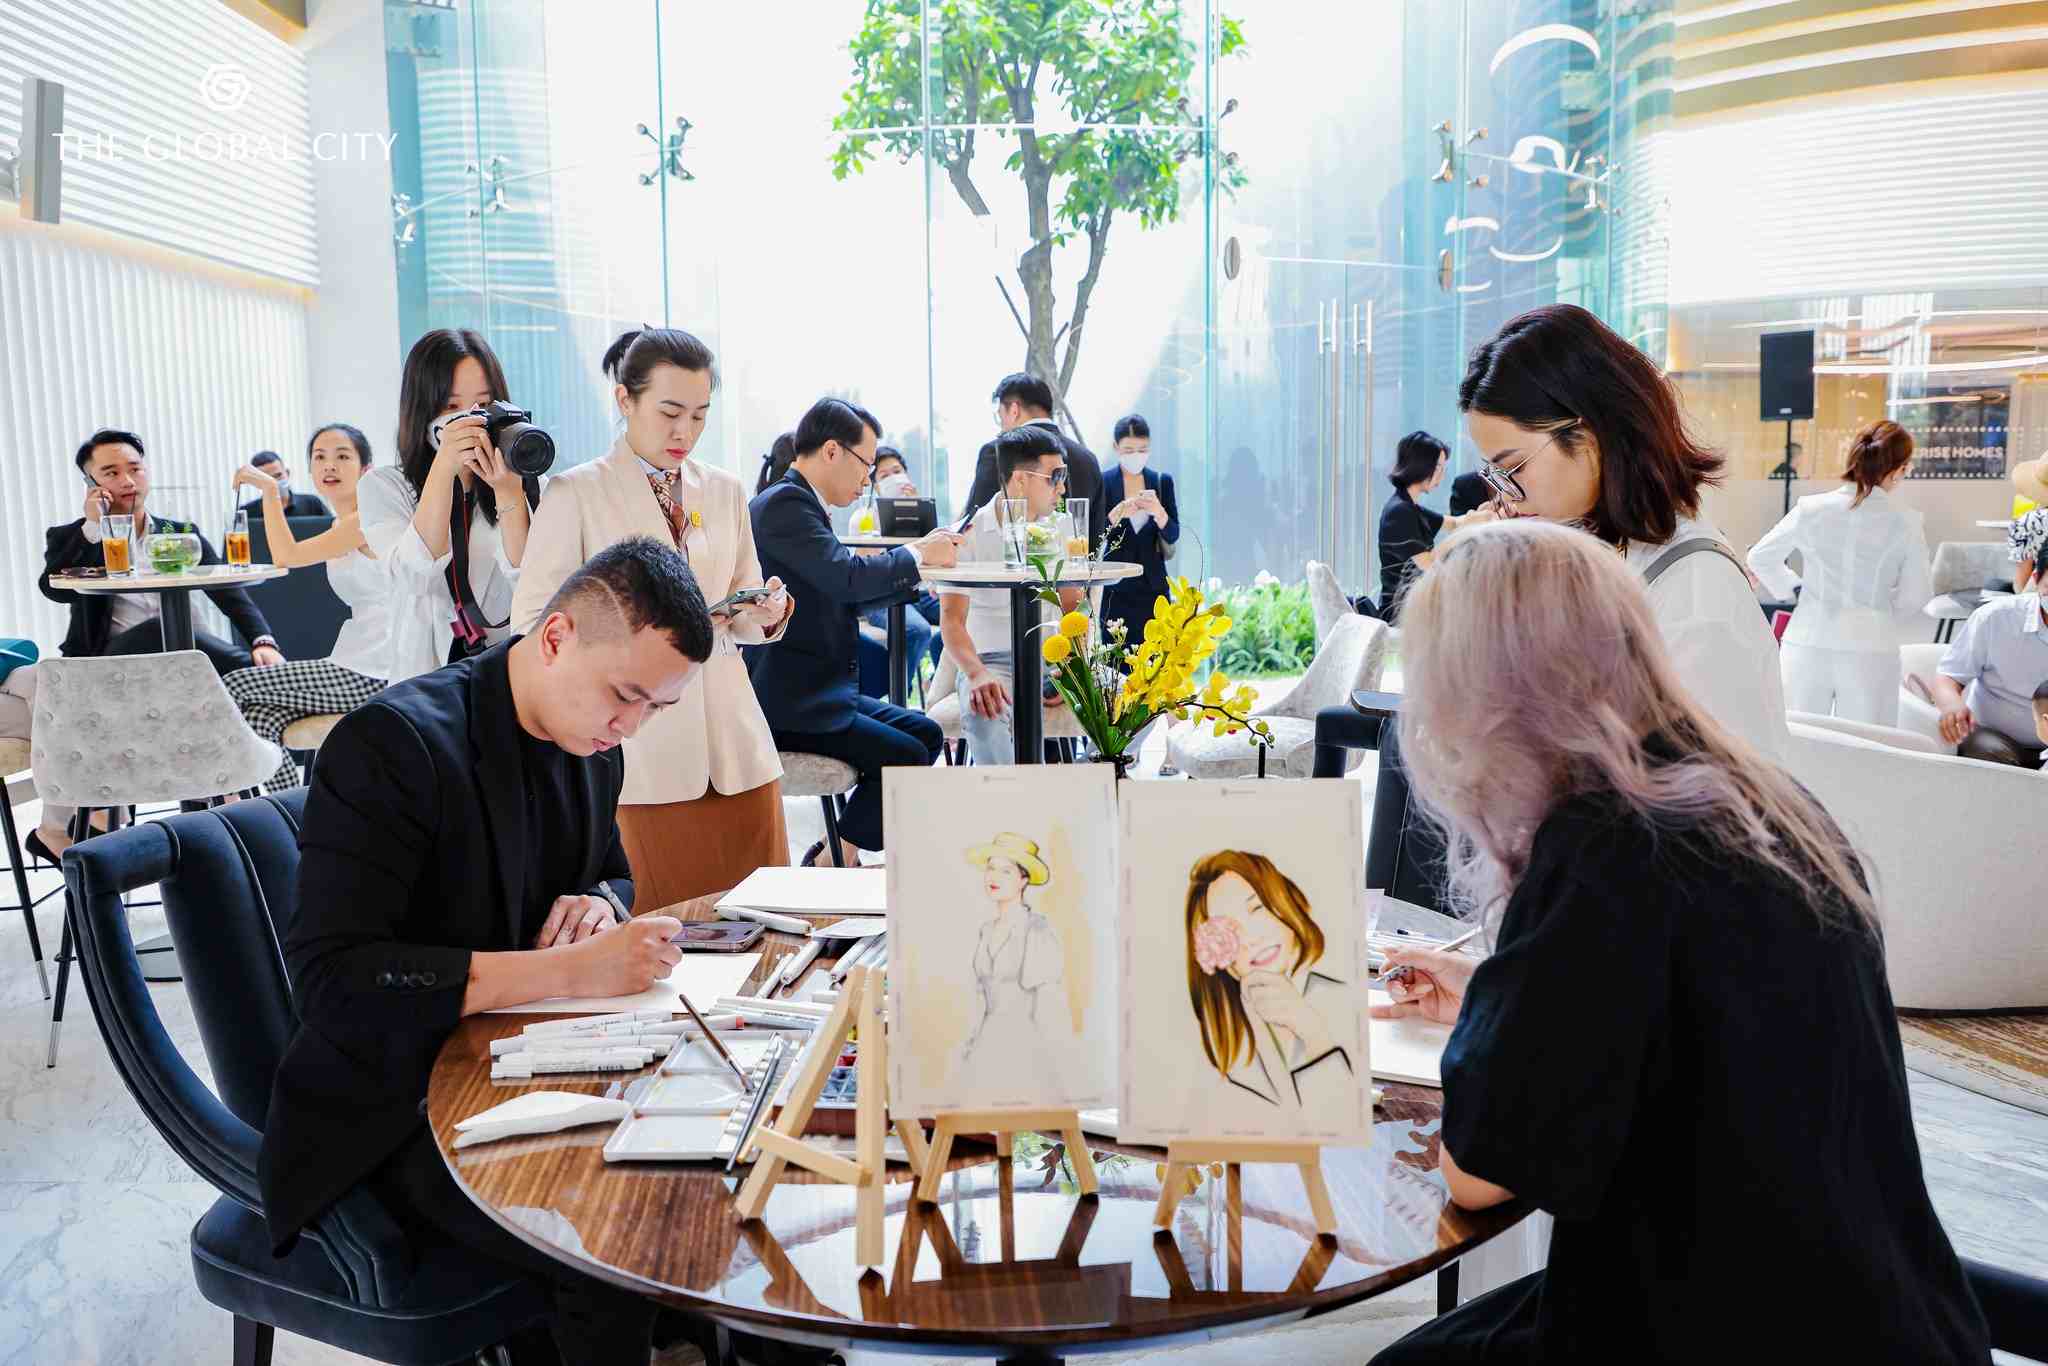 Tại The Global Sales Gallery kiêm Lifestyle Hub, khách hàng hào hứng trải nghiệm các hoạt động nghệ thuật